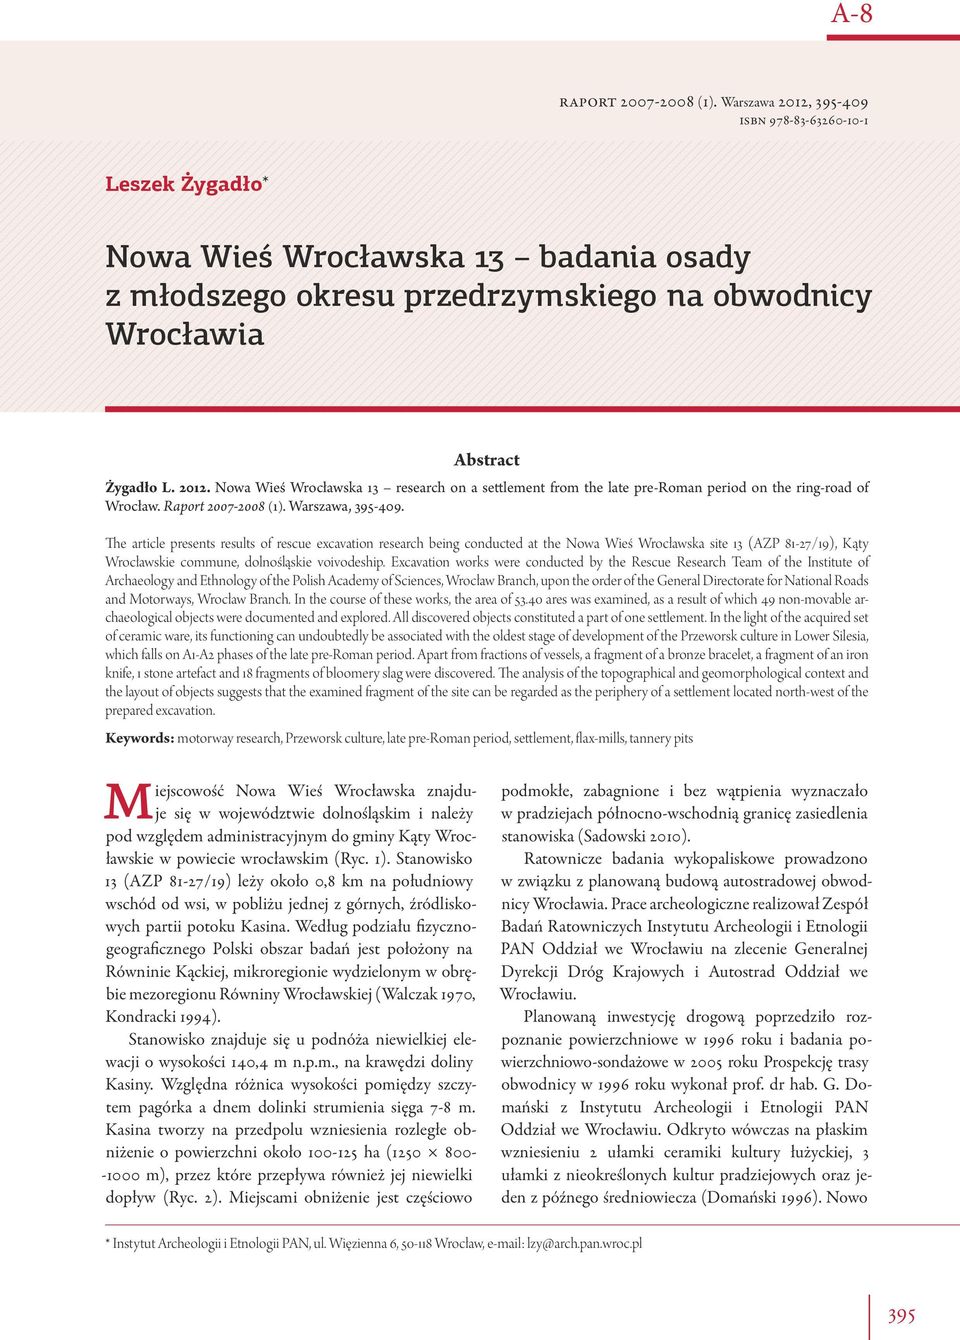 Raport 2007-2008 (1). Warszawa, 395-409.